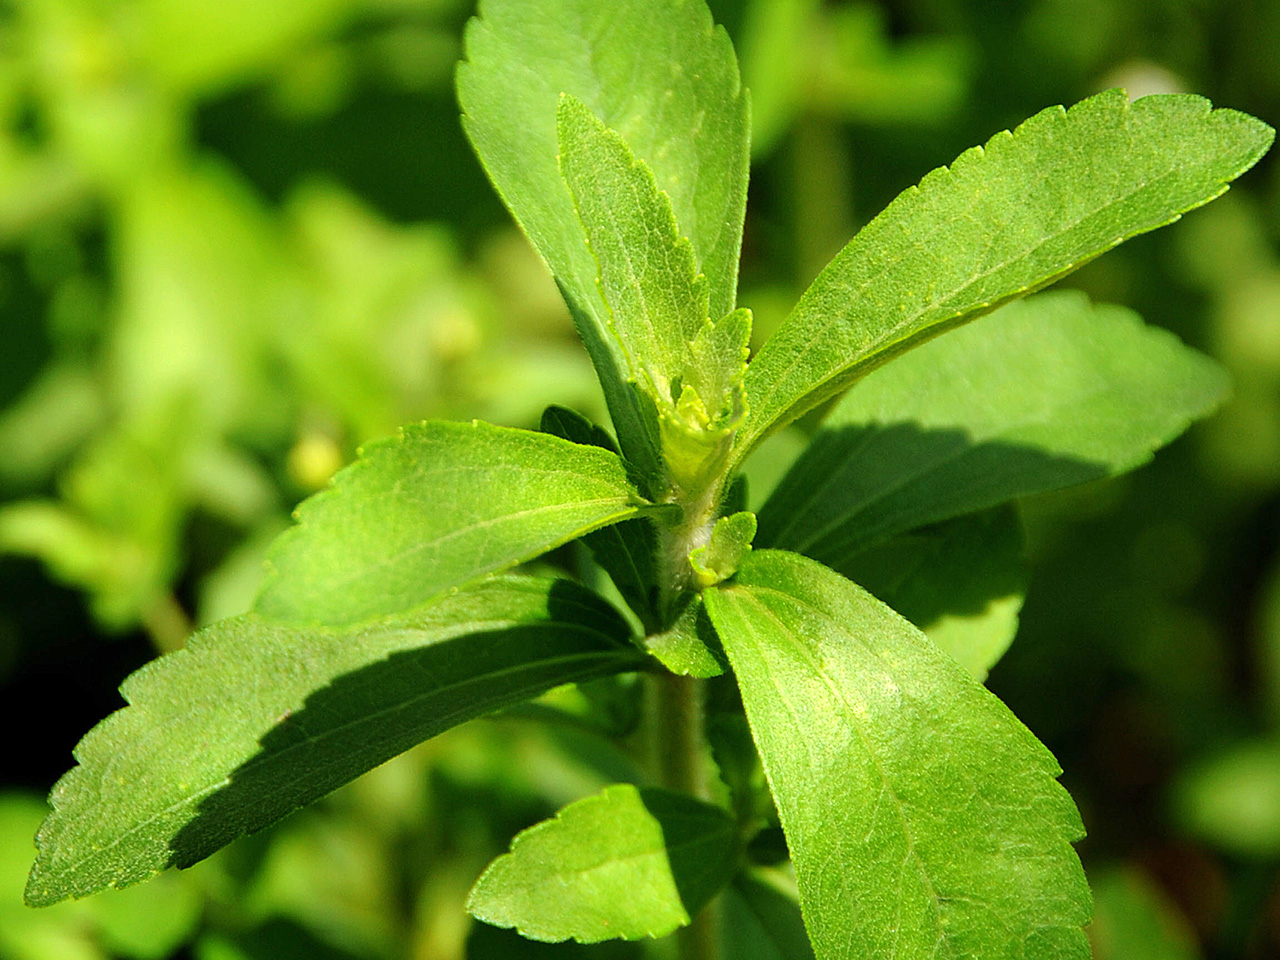 La Stevia Rebaudiana Bertoni es una planta herbácea originaria del Paraguay. - www.nbcnews.com